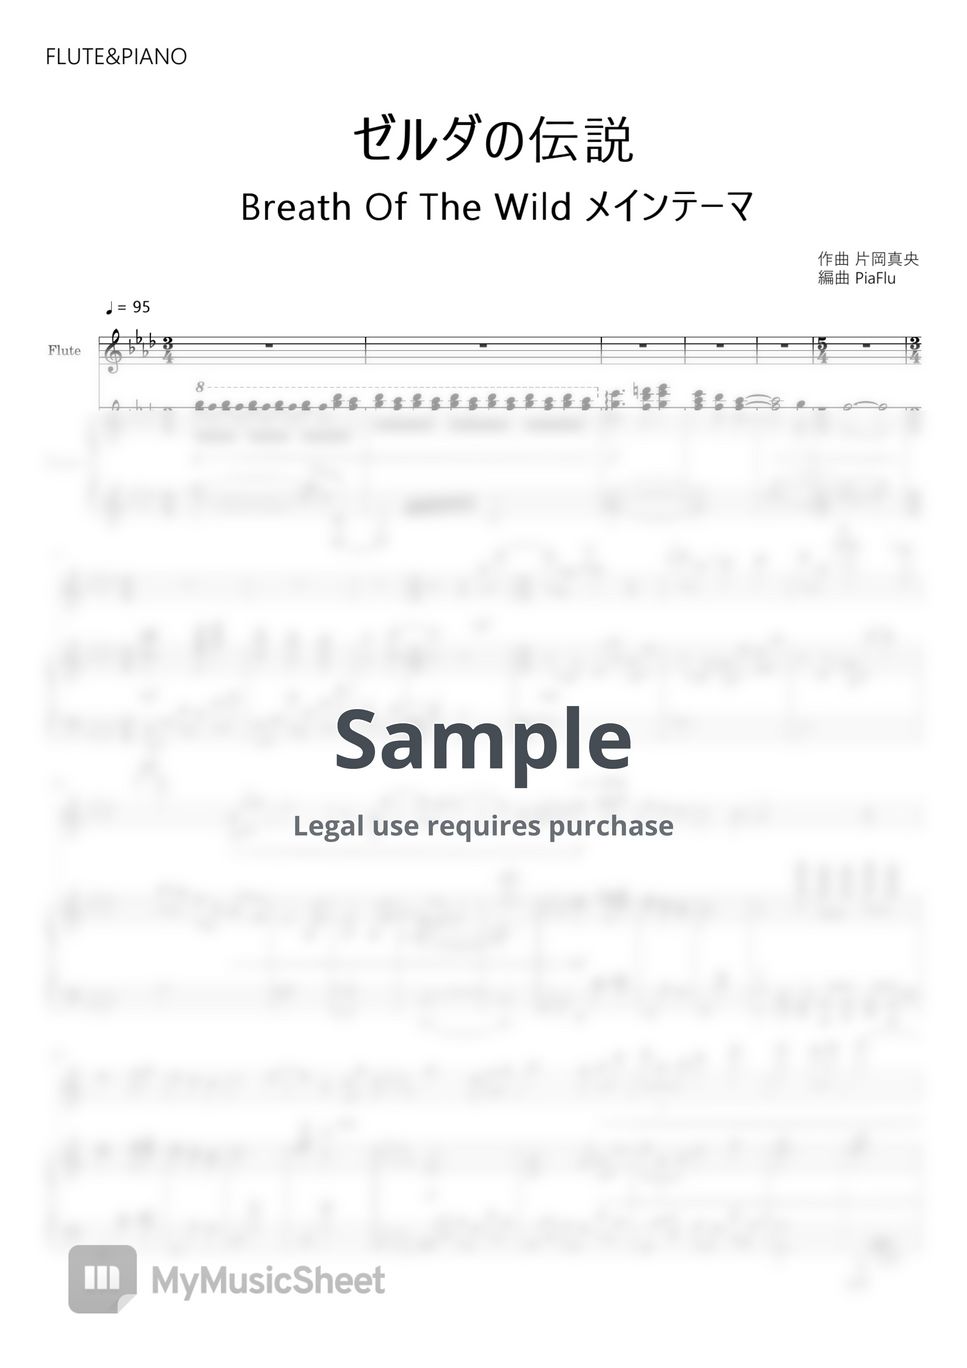 片岡真央 - Manaka Kataoka - Main Theme - The Legend of Zelda BotW (Flute&Piano) by PiaFlu / ピアフル Piano&Flute